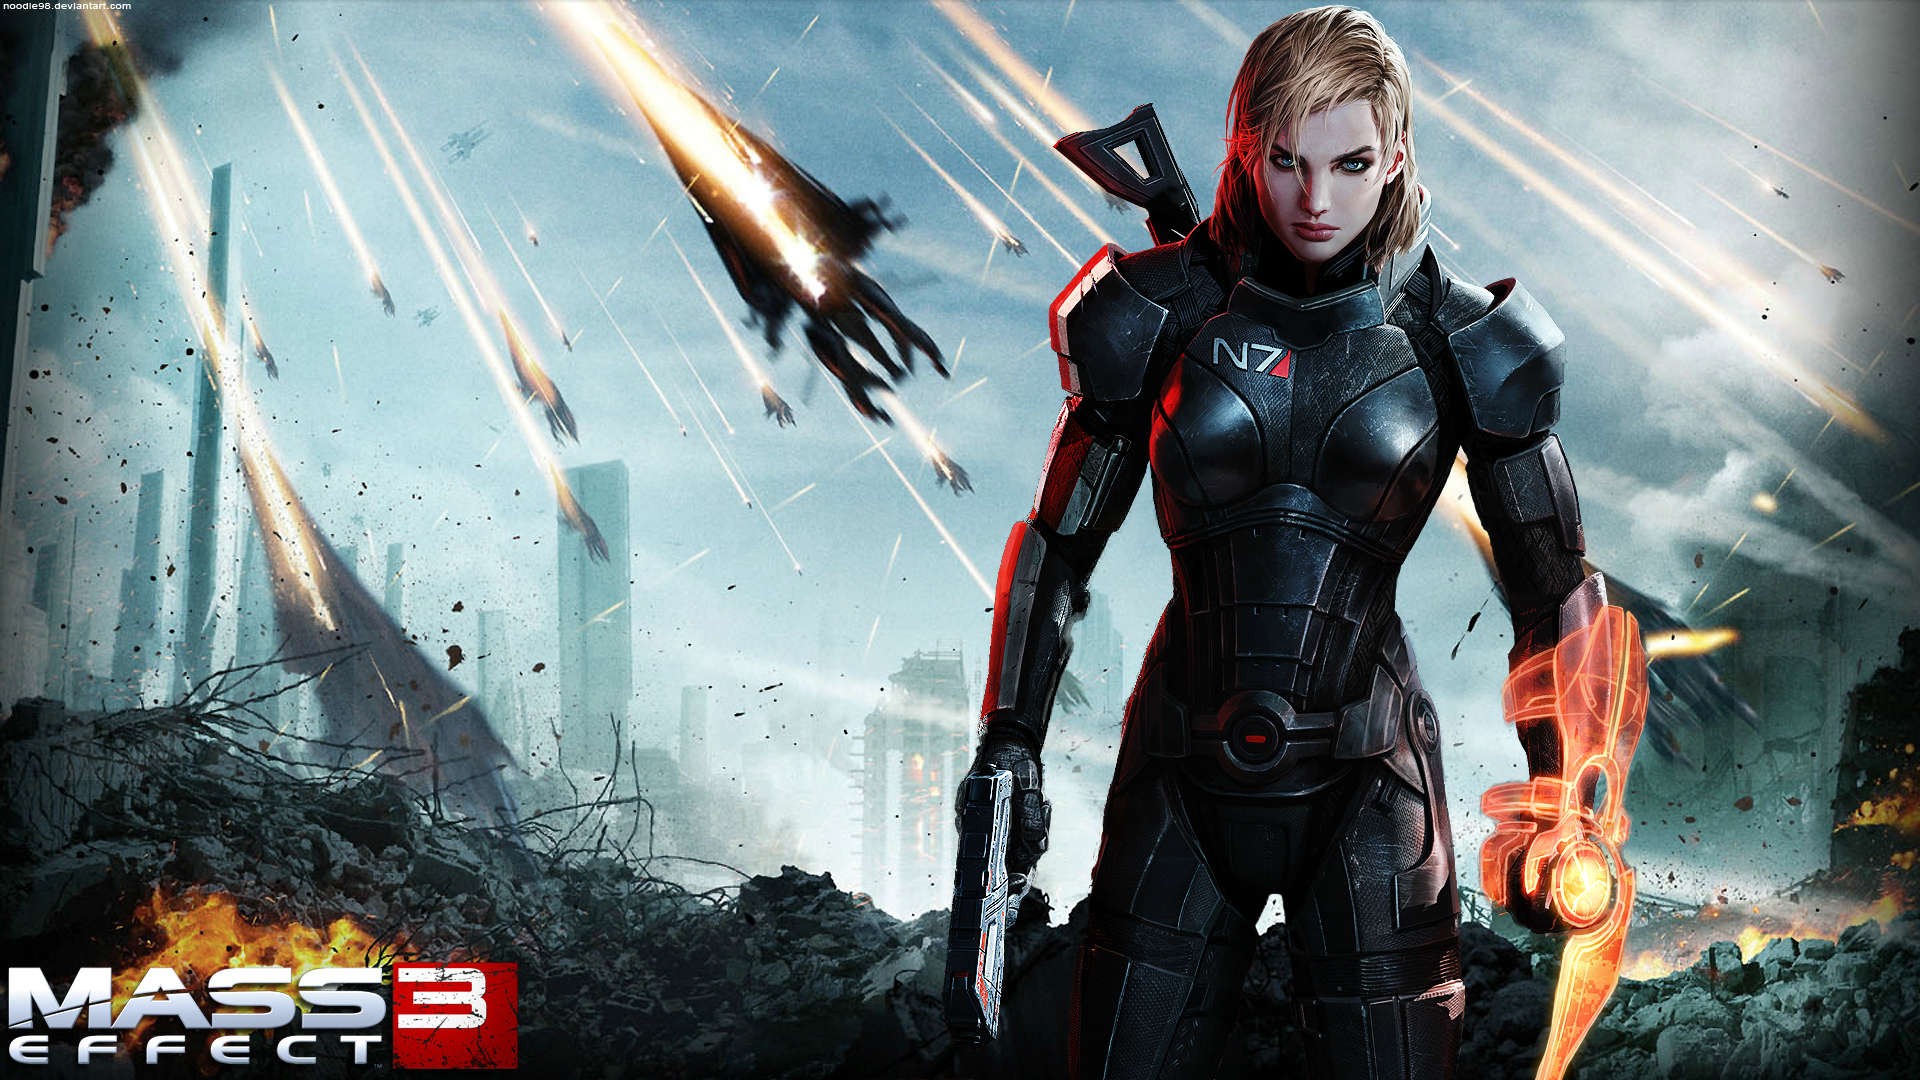 EA quảng cáo cho "Mass Effect: Andromeda" bằng công nghệ thực tế ảo 4D